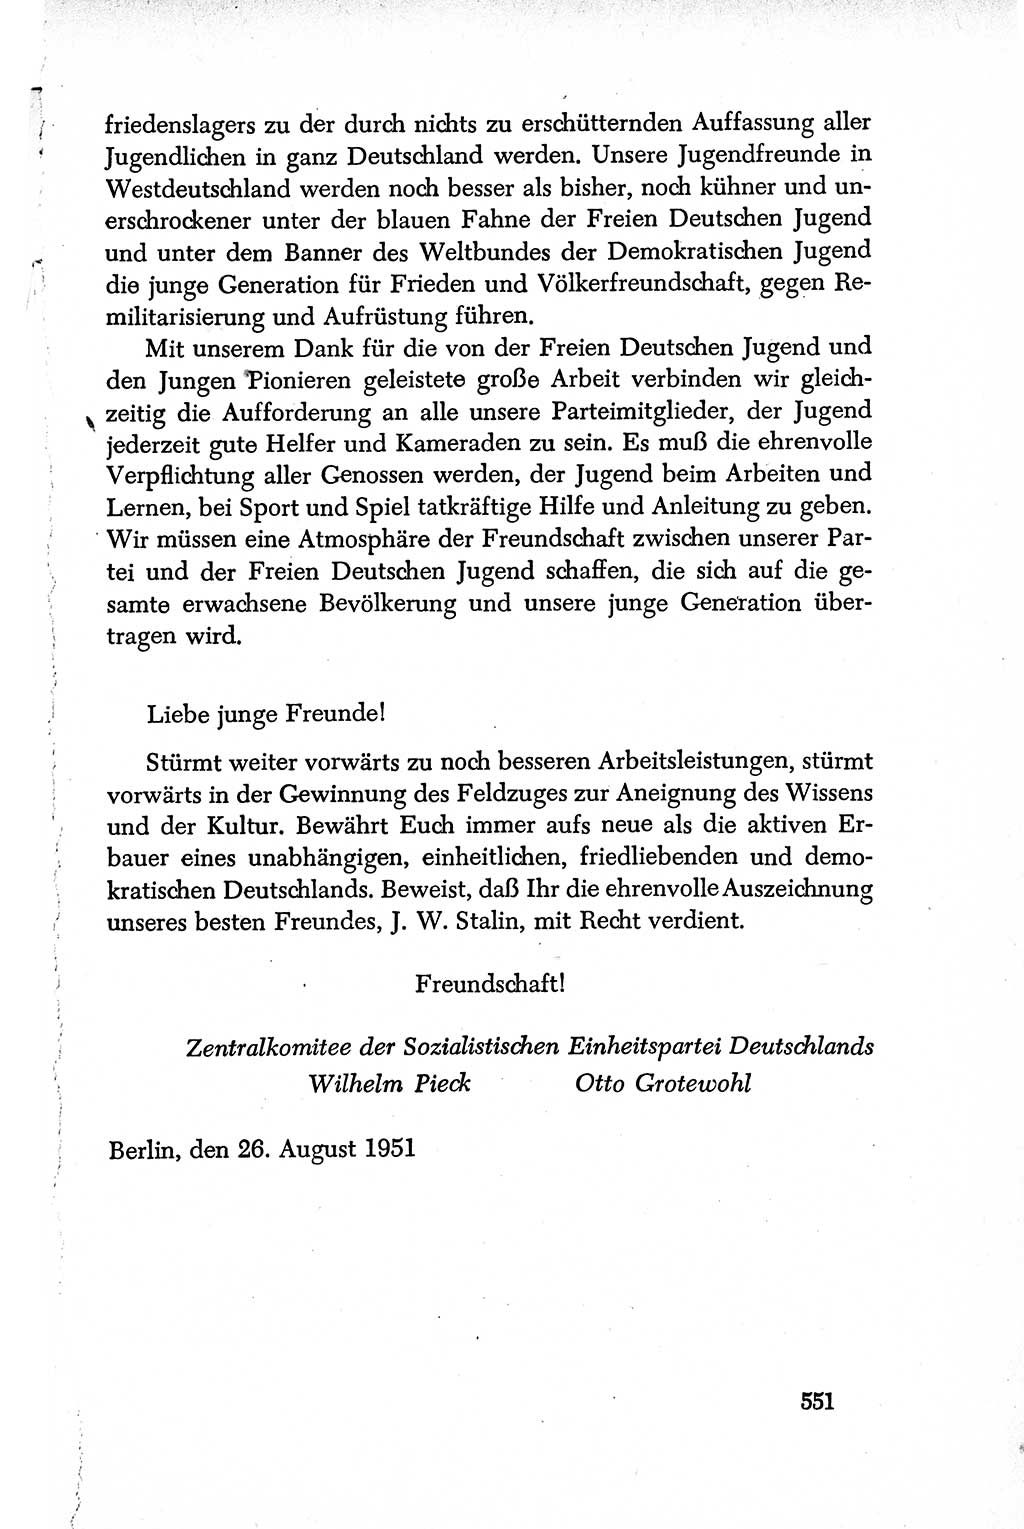 Dokumente der Sozialistischen Einheitspartei Deutschlands (SED) [Deutsche Demokratische Republik (DDR)] 1950-1952, Seite 551 (Dok. SED DDR 1950-1952, S. 551)